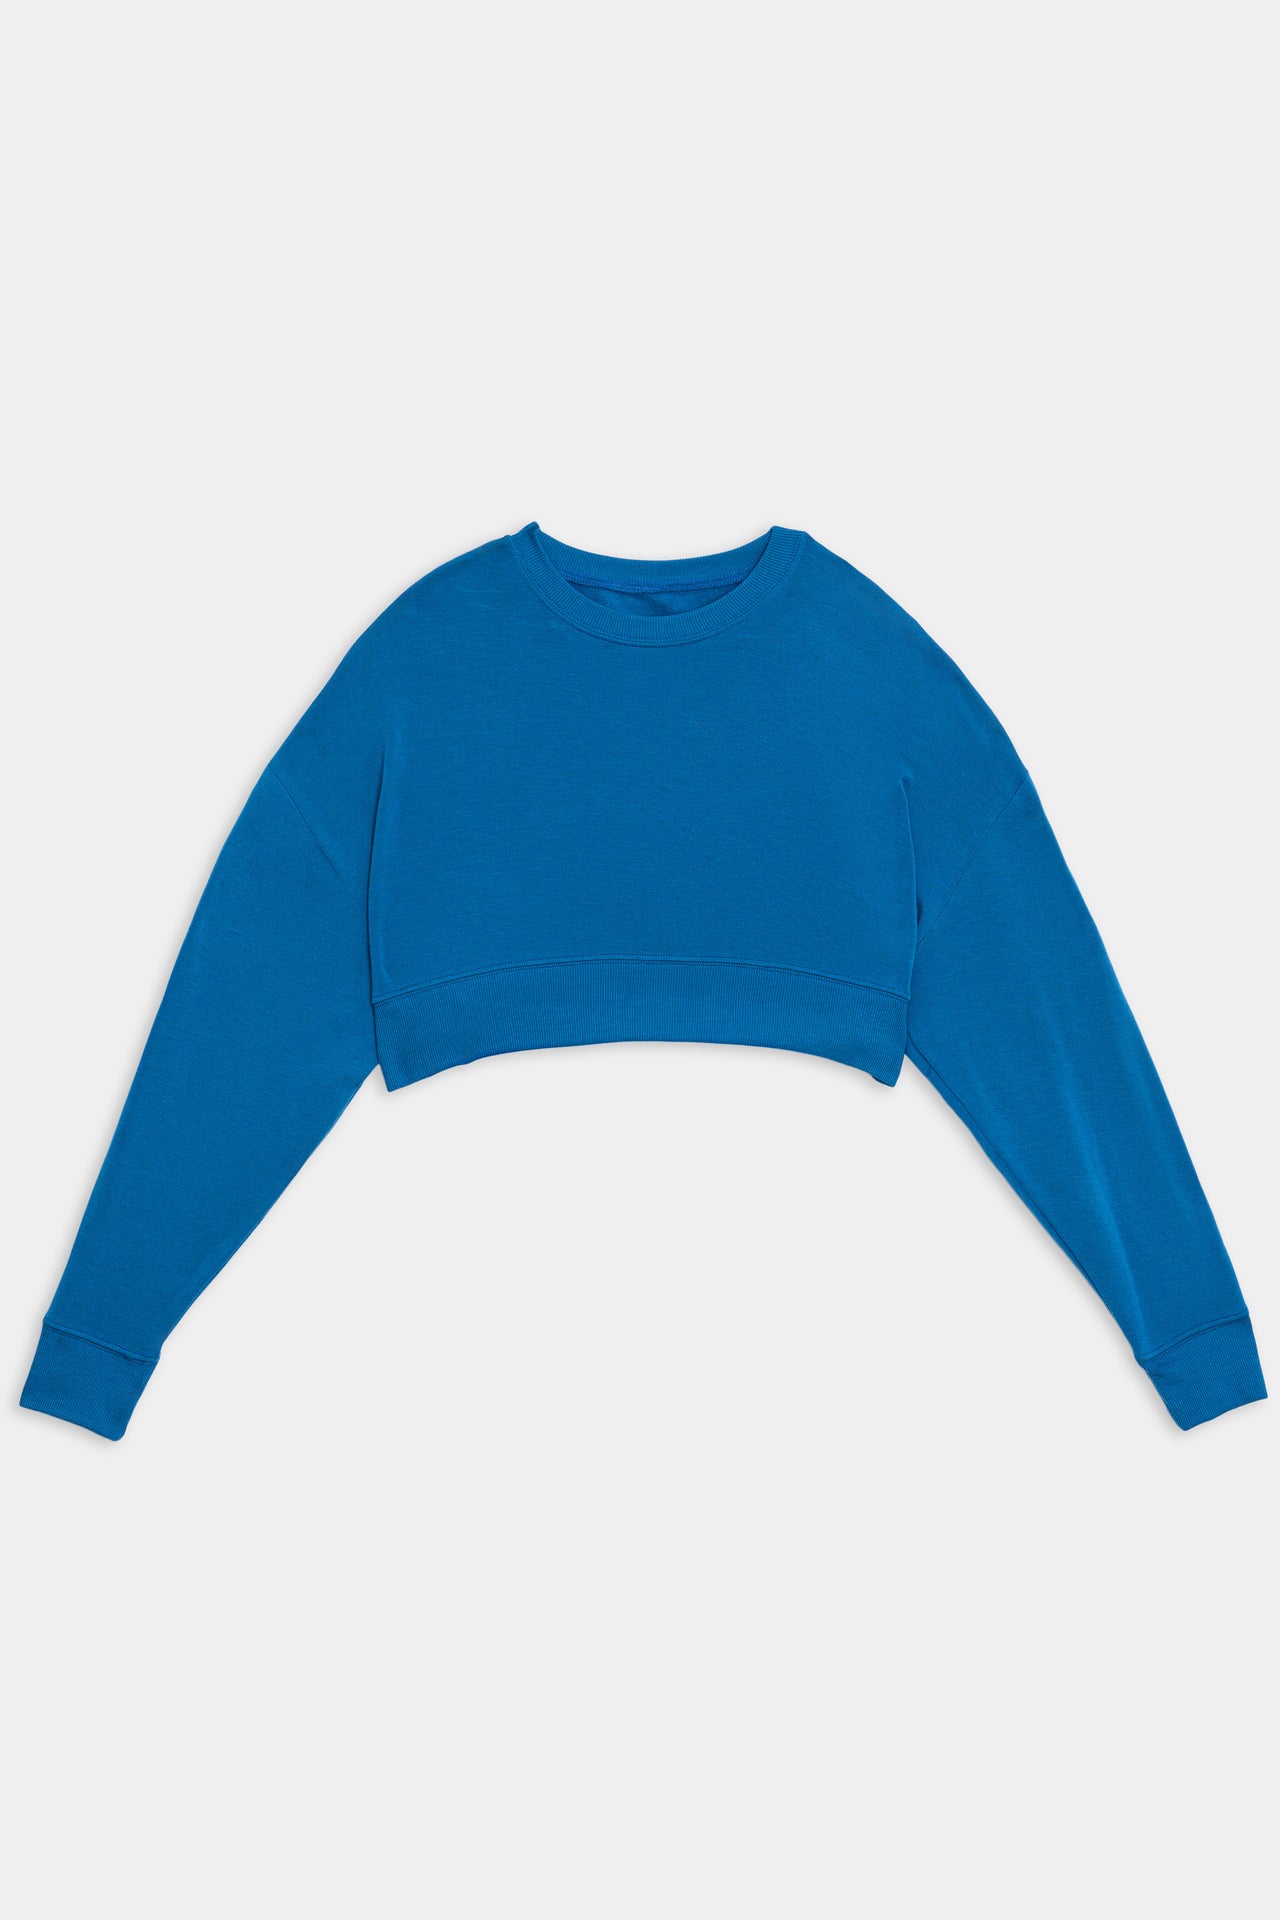 Noah Fleece Crop Sweatshirt in Stone Blue from SPLITS59.